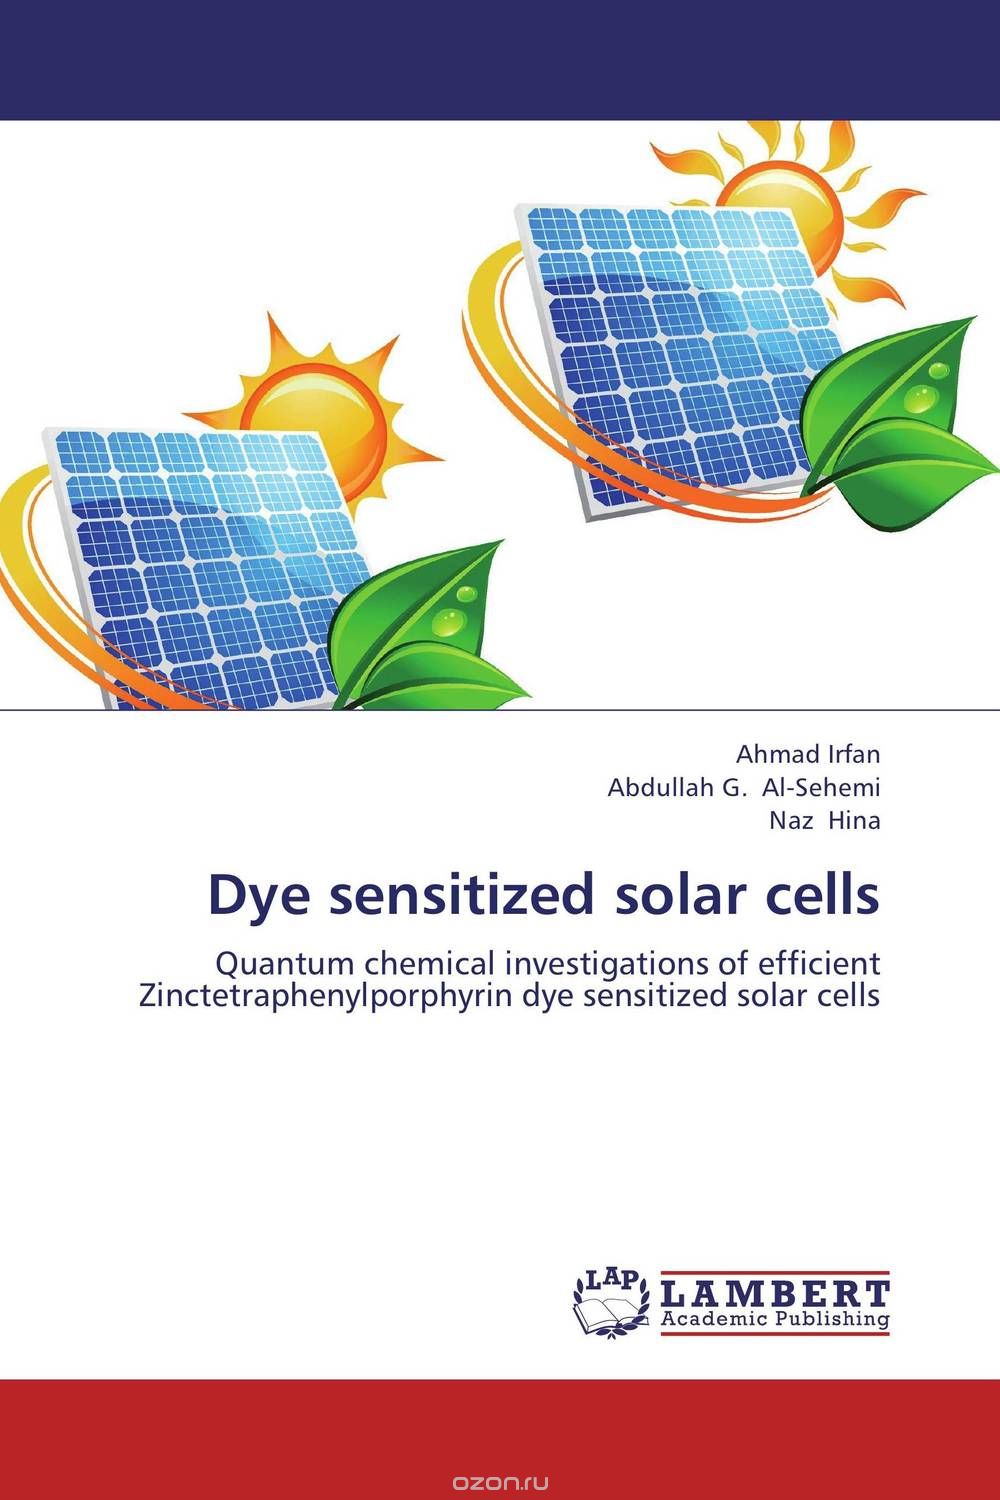 Скачать книгу "Dye sensitized solar cells"